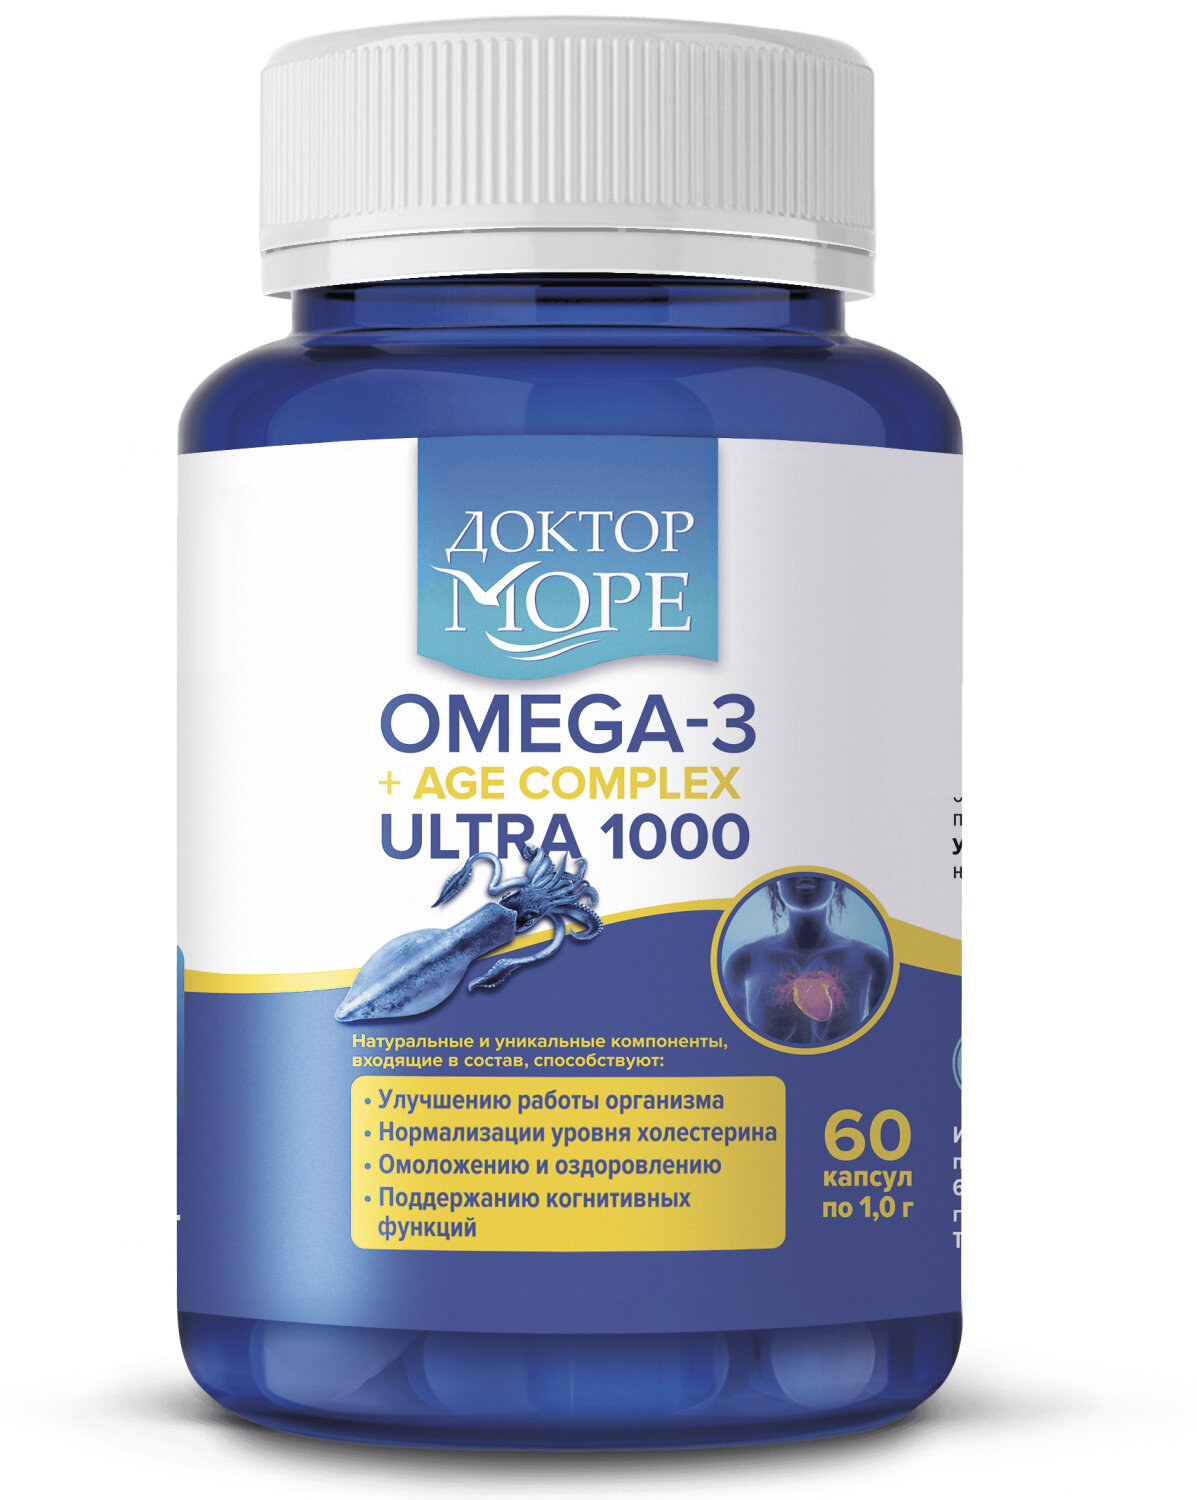 Доктор Море Омега-3 + АГЭ Ультра 1000 мг, 60 капс. по 1,0 гр.